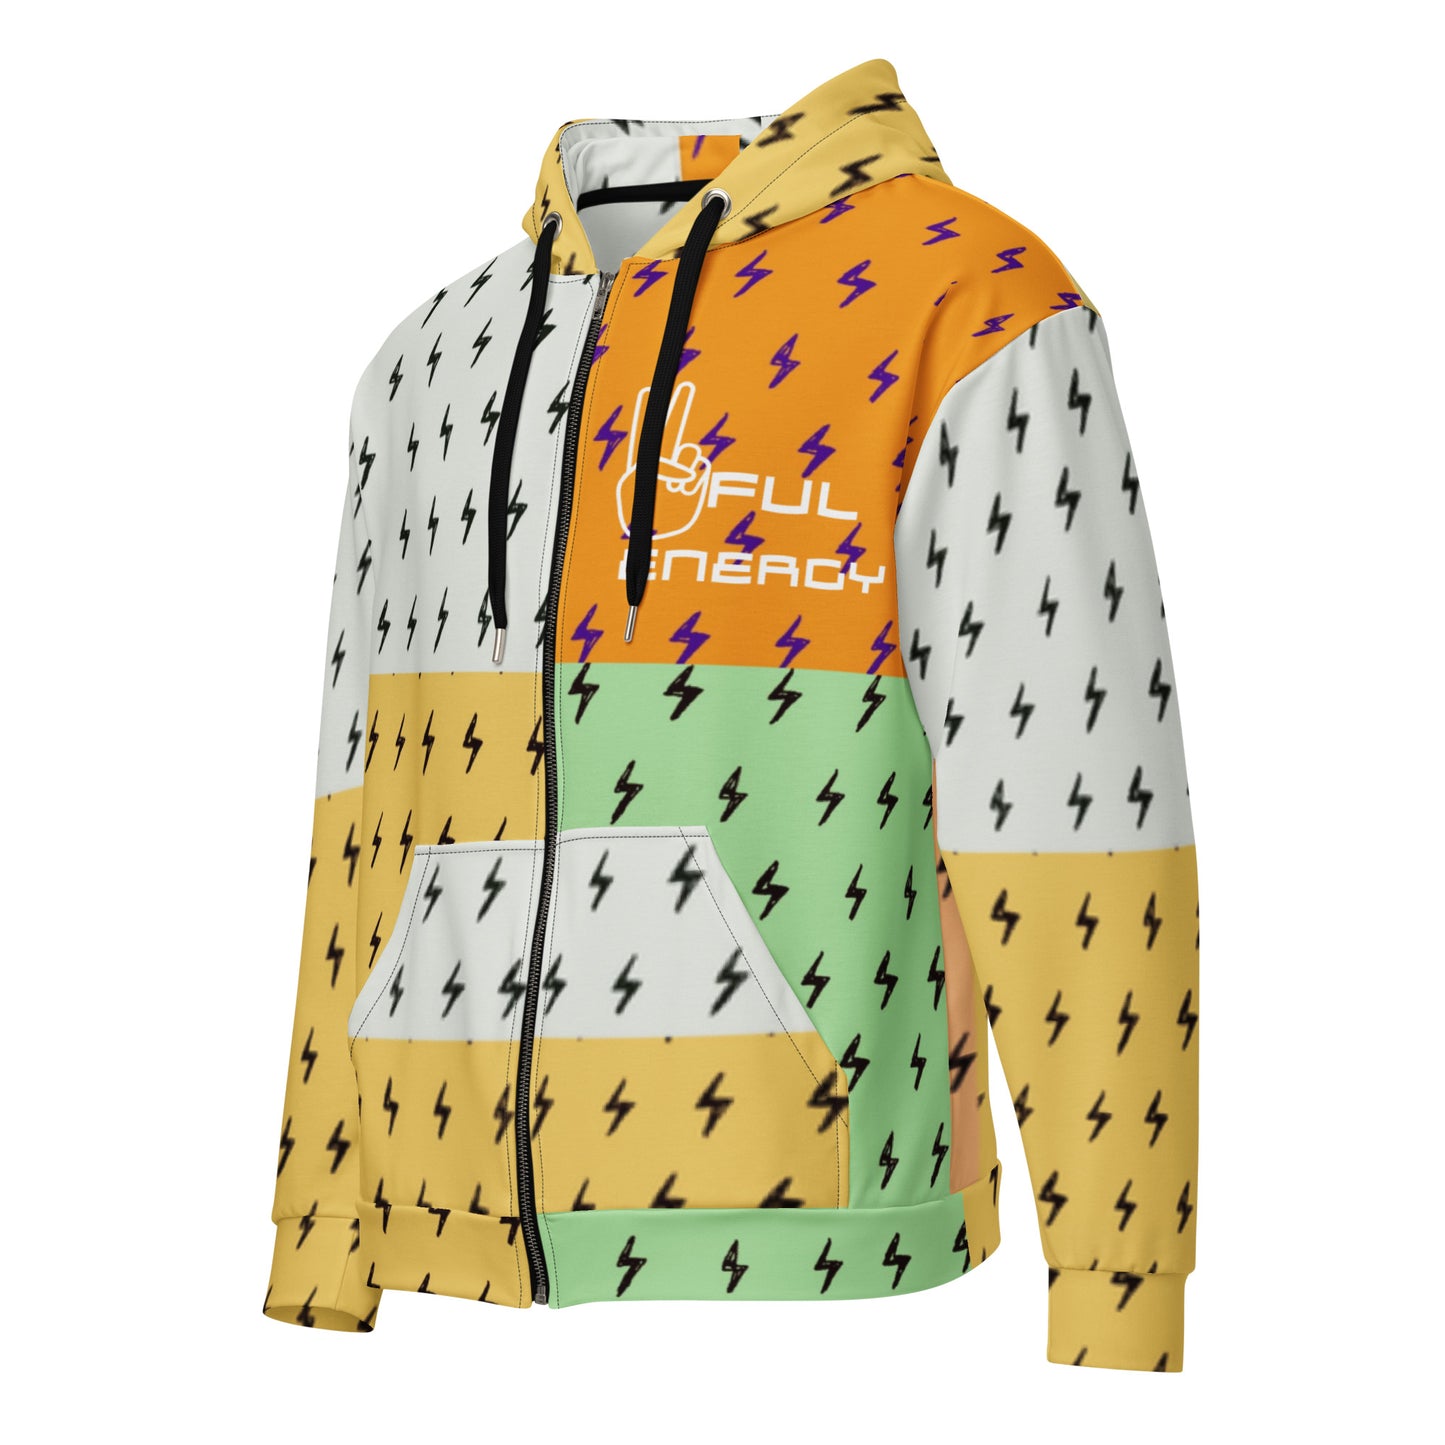 Multicolored Peaceful Energy Unisex zip hoodie